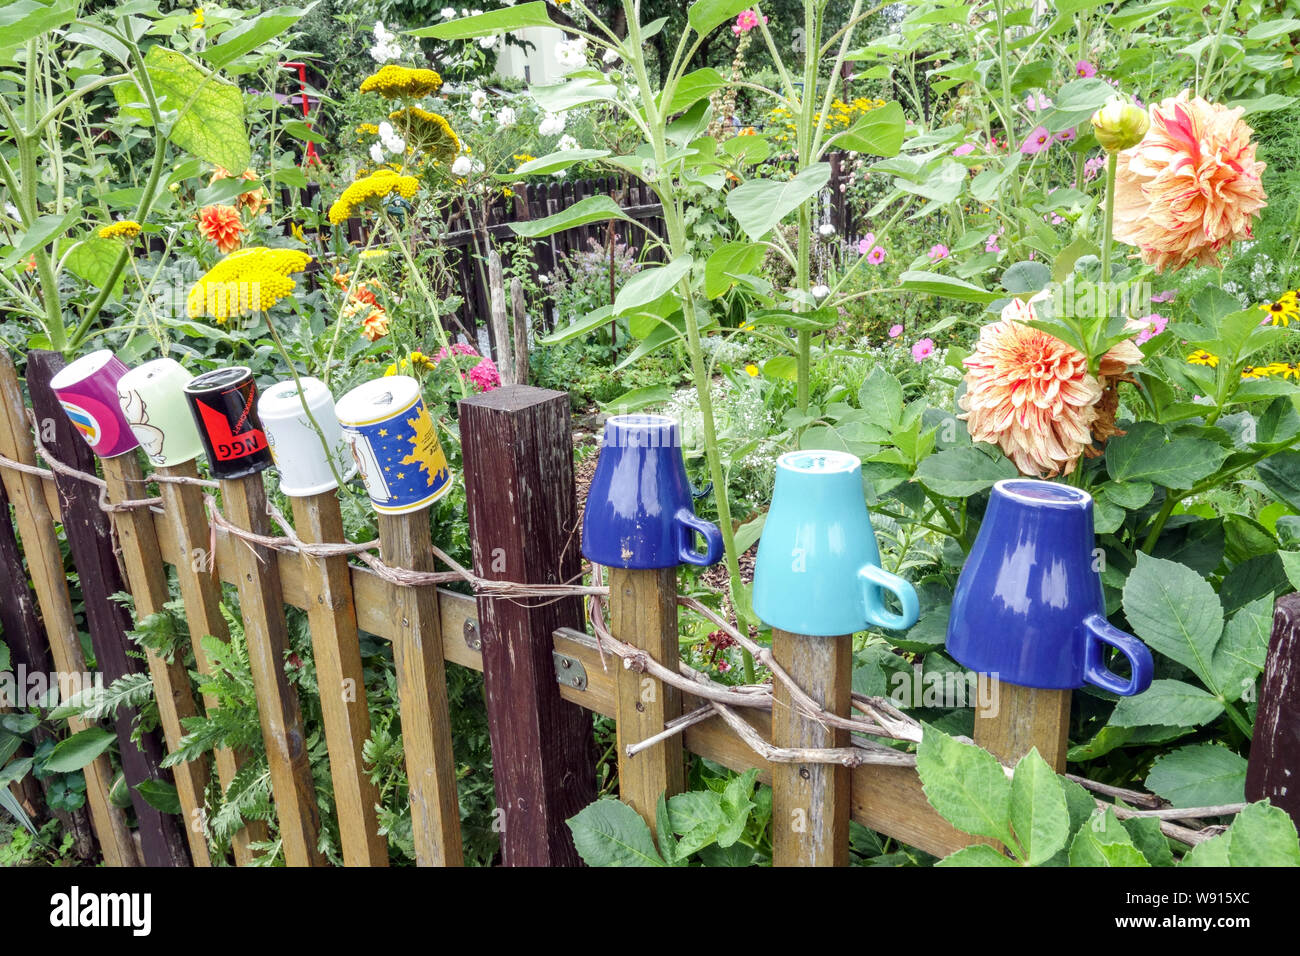 Clôture de jardin en bois dans le jardin envahi avec des tasses colorées sur des planches, jardin cottage Allemagne jardin urbain jardin de clôture en bois Banque D'Images